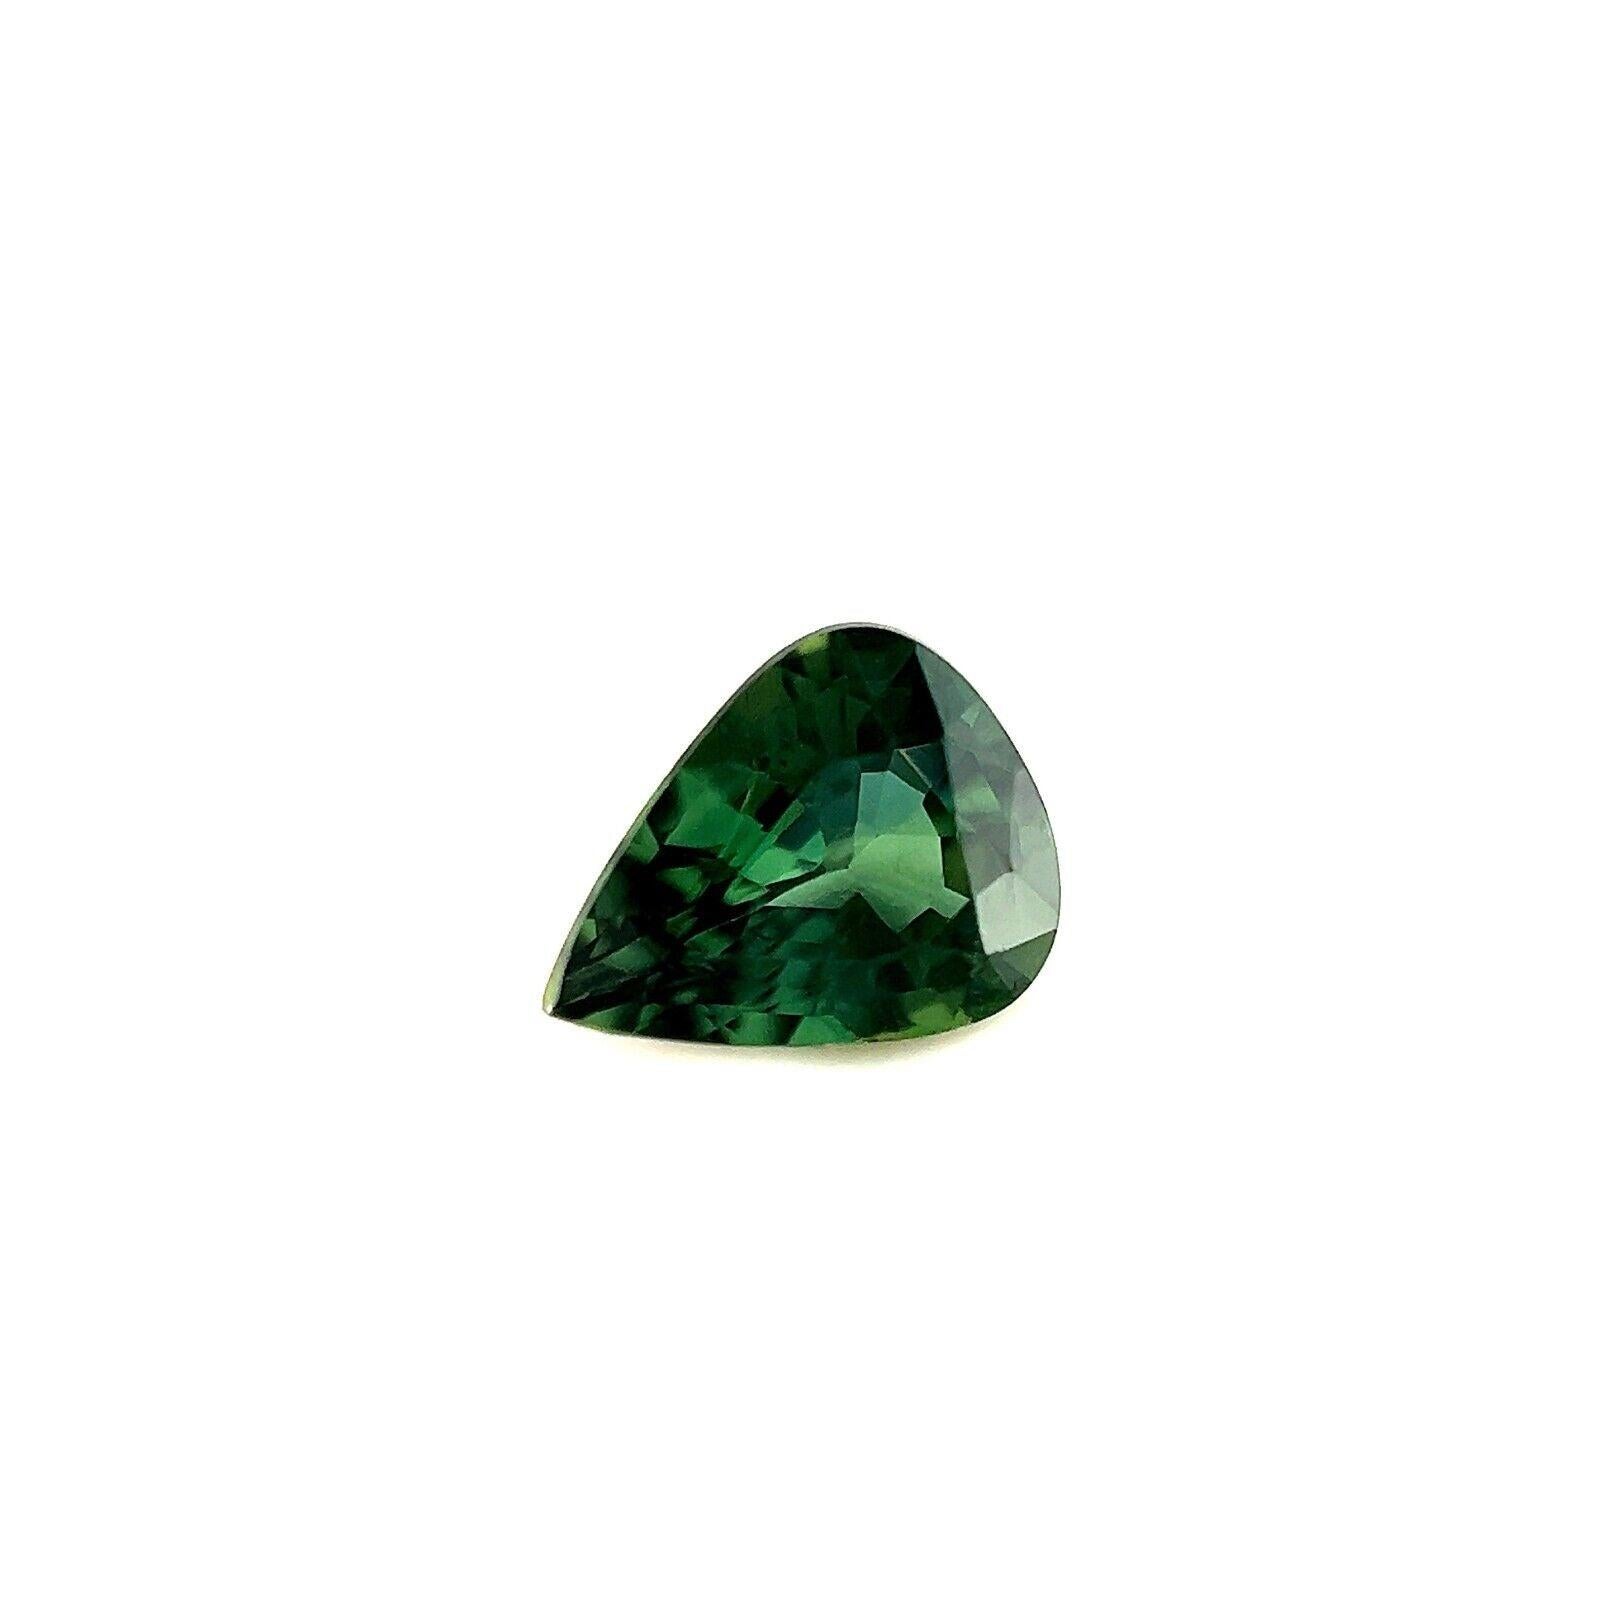 0.73ct Saphir Australien Bleu Vert Sarcelle Poire Teardrop Cut Loose Gem 6.6x5.2mm

Fine pierre précieuse saphir australien vert bleu profond naturel.
0.73 Carat avec une belle couleur bleu vert profond. La pierre a également une excellente clarté,